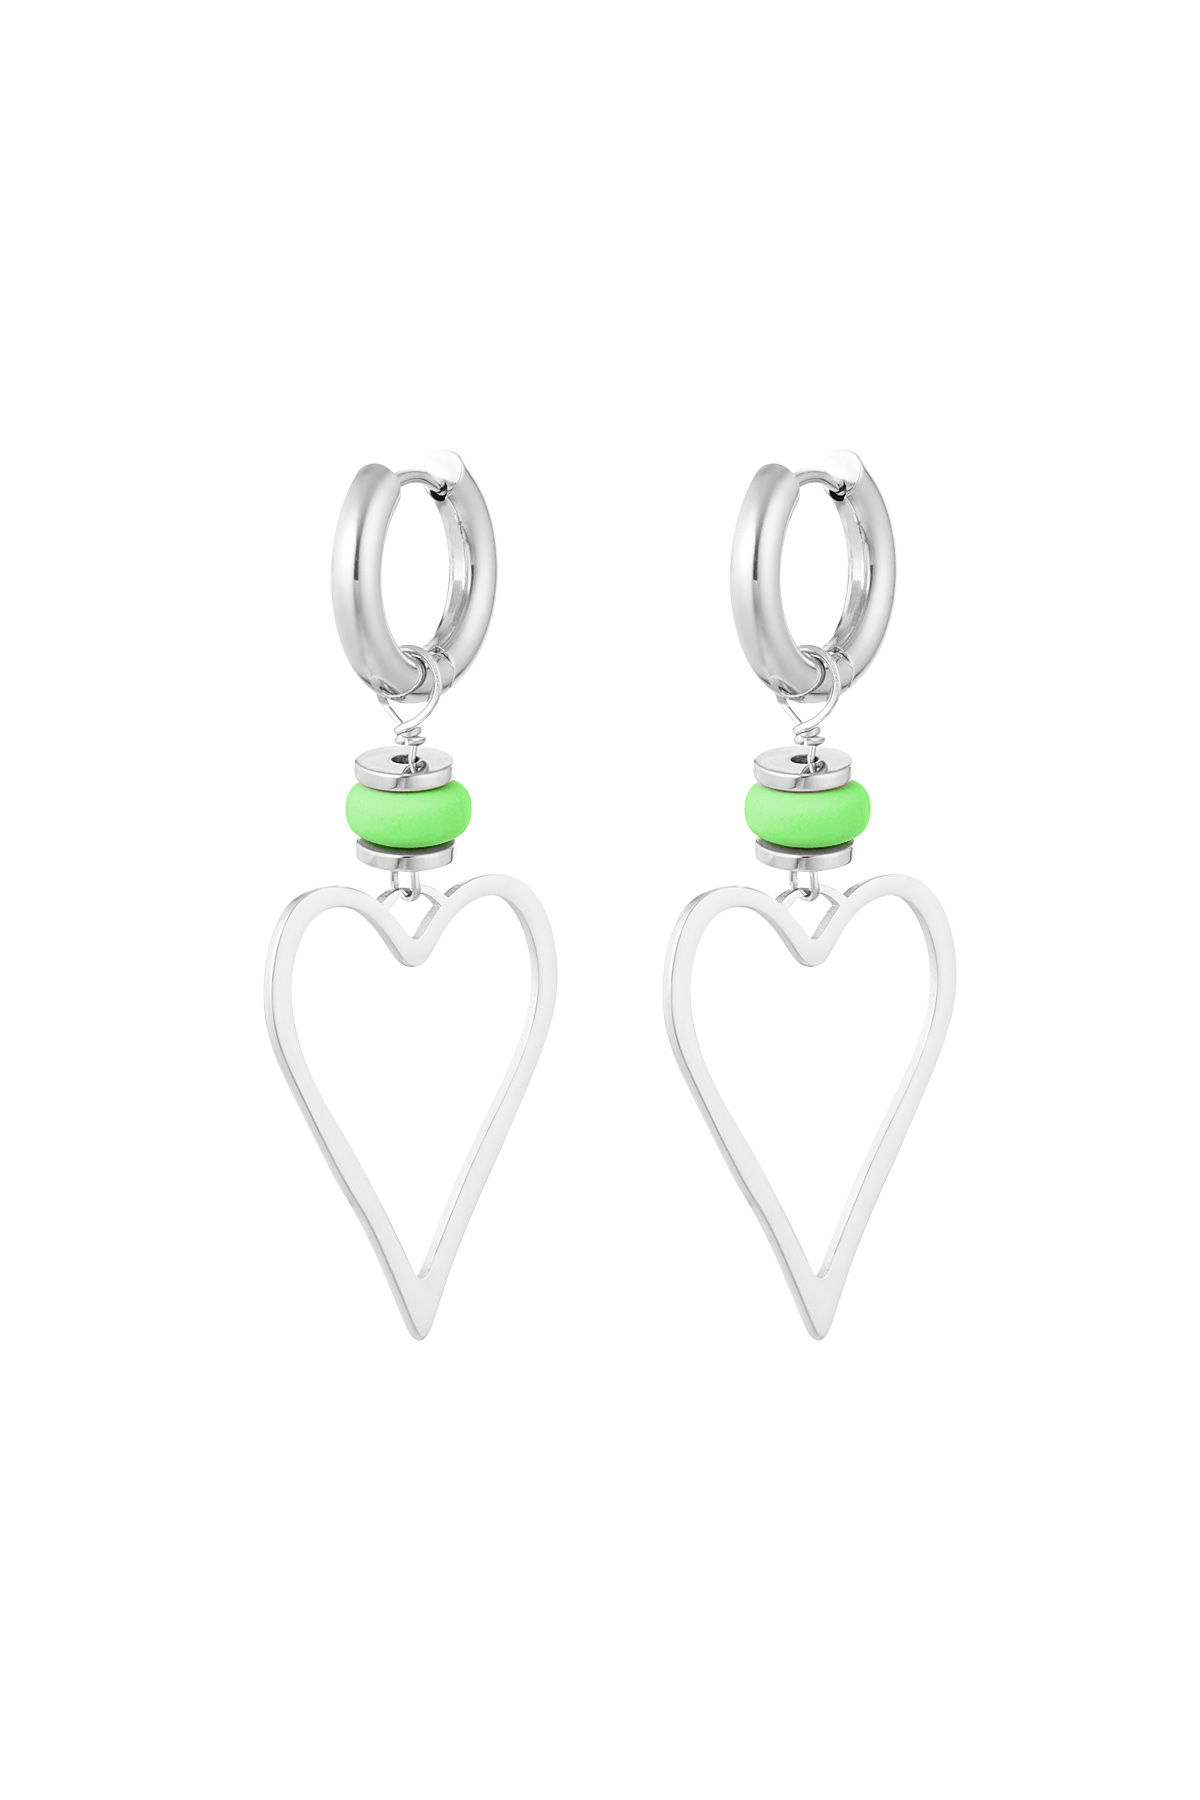 Orecchini cuore con perlina - argento/verde h5 